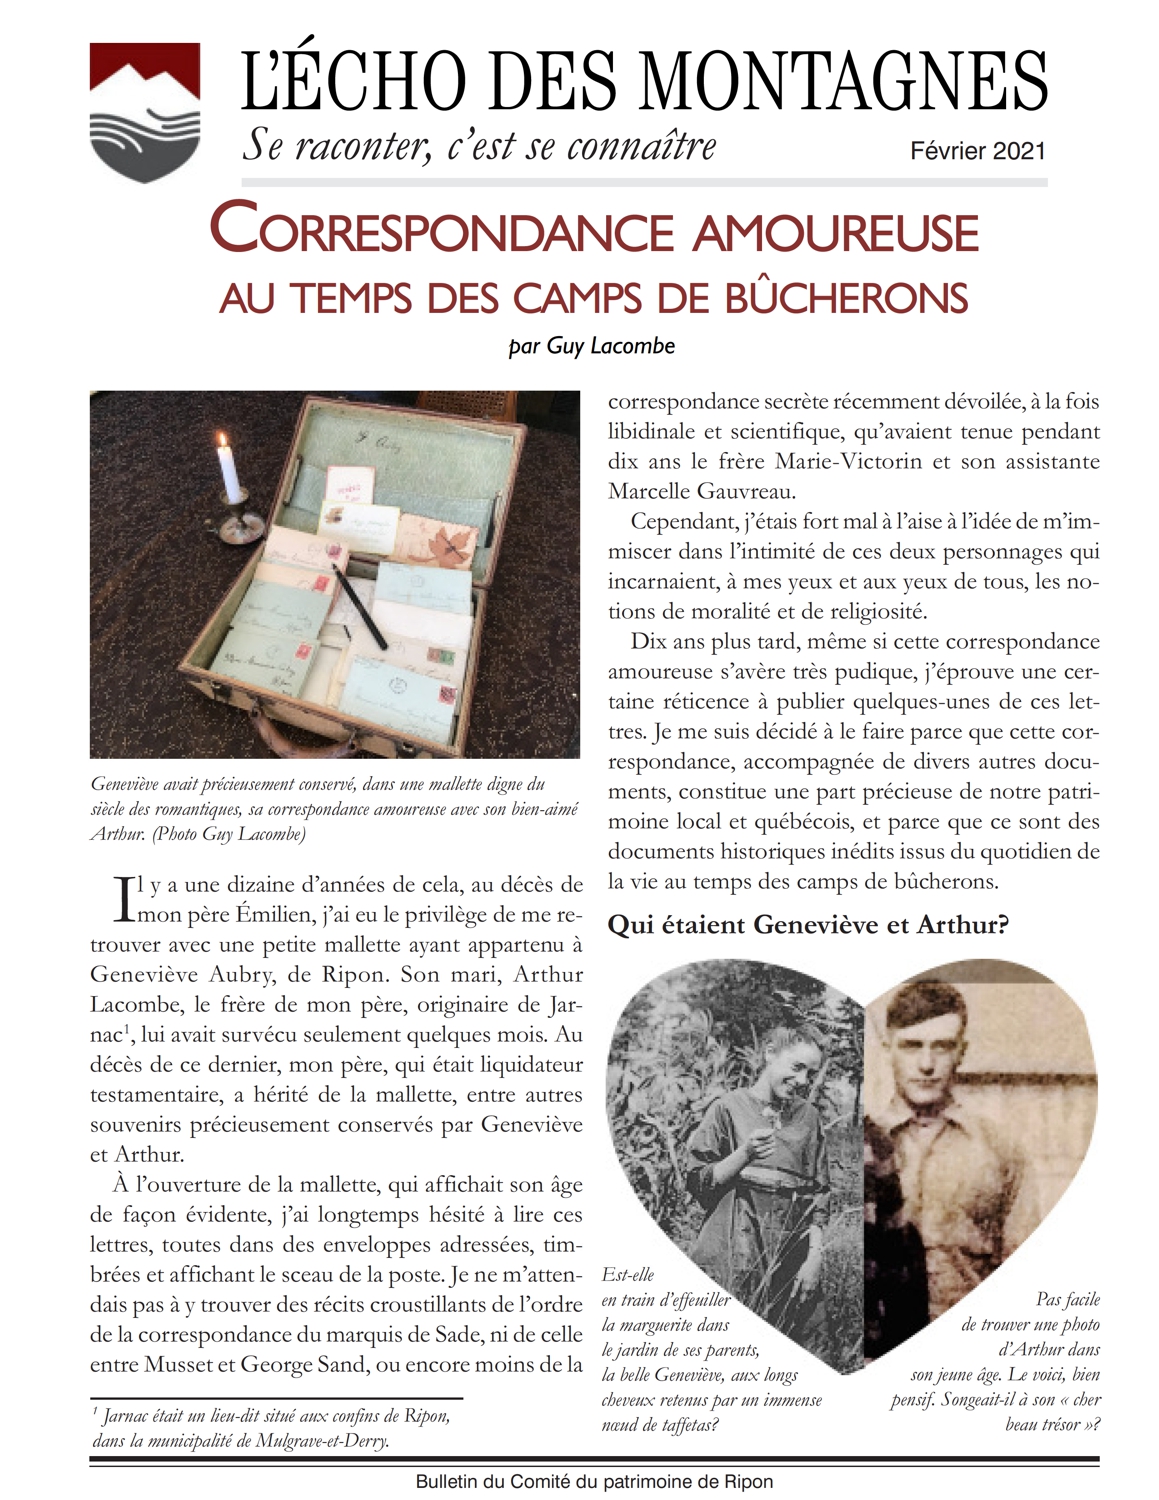 Correspondance amoureuse entre Geneviève Aubry et Arthur Lacombe